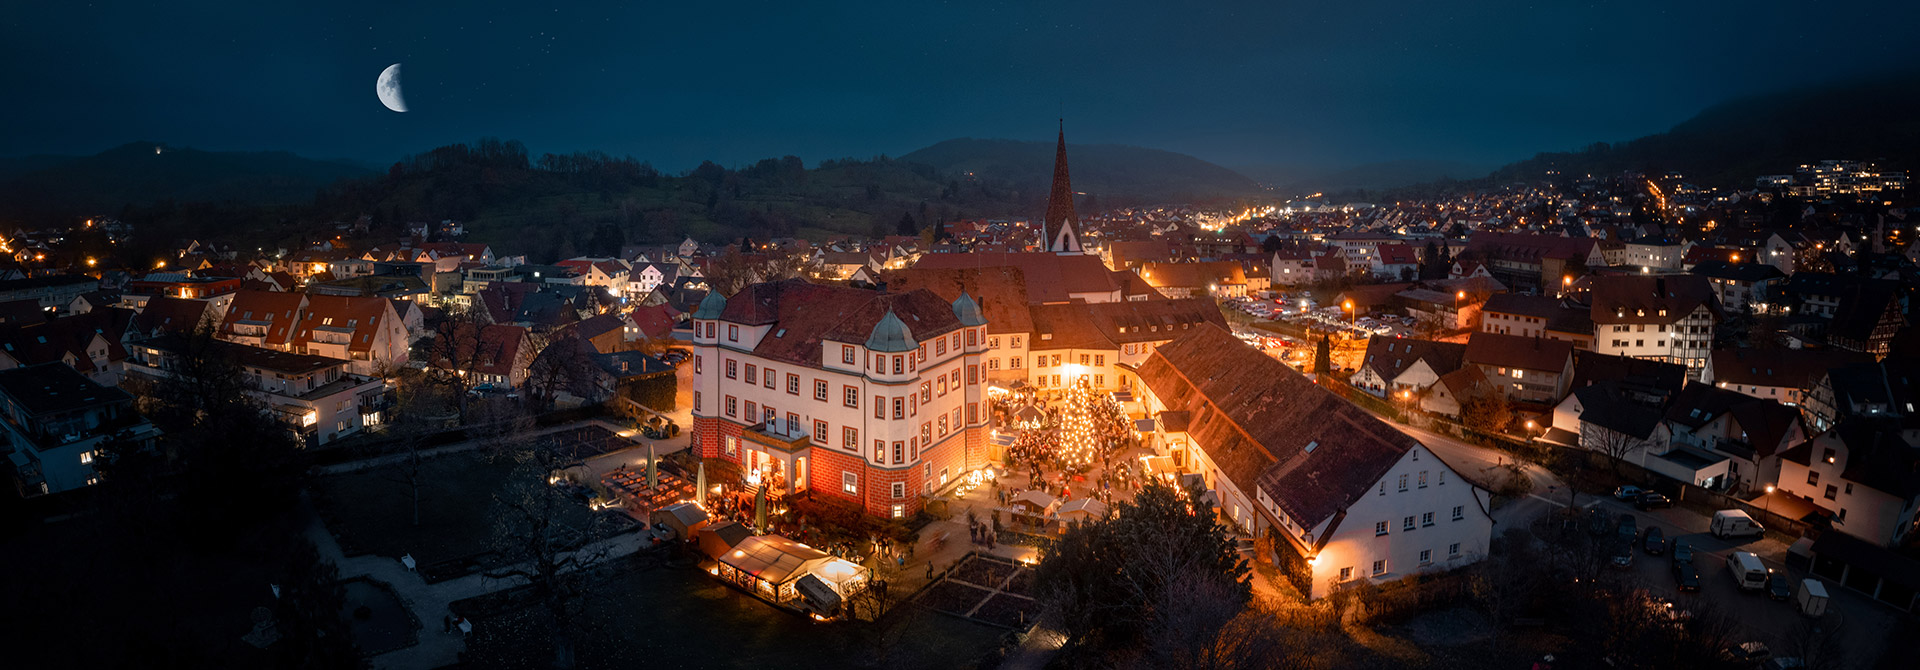 Weihnachtsmarkt rund ums Schloss